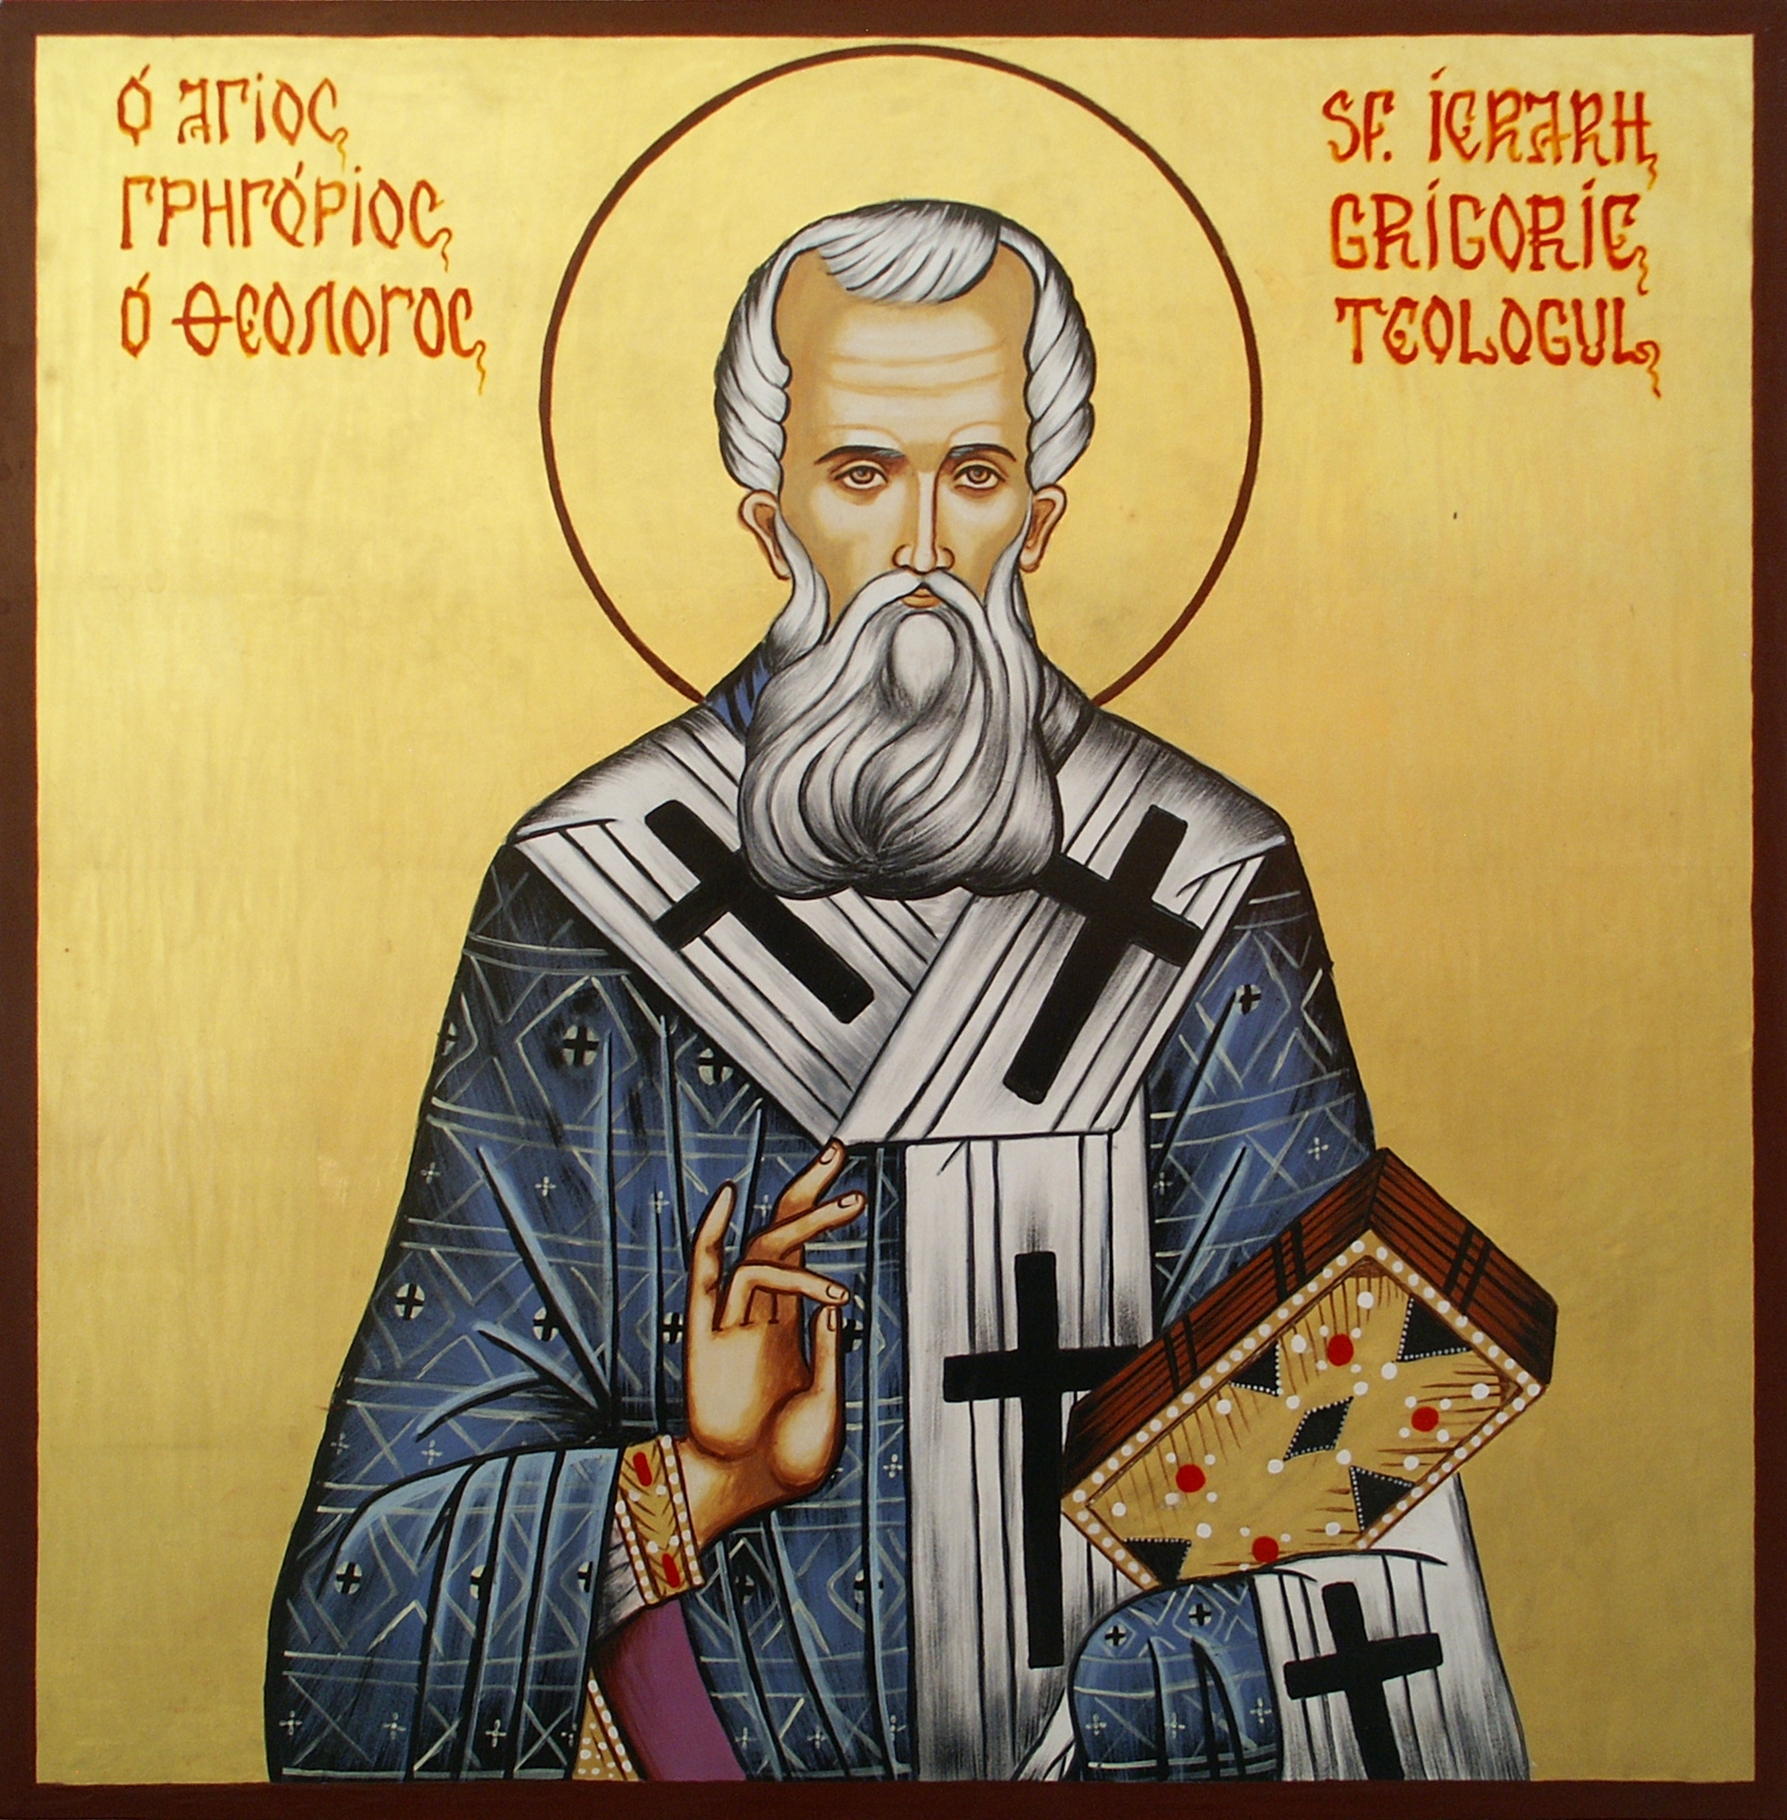 Astăzi e Sfântul Ierarh Grigorie Teologul